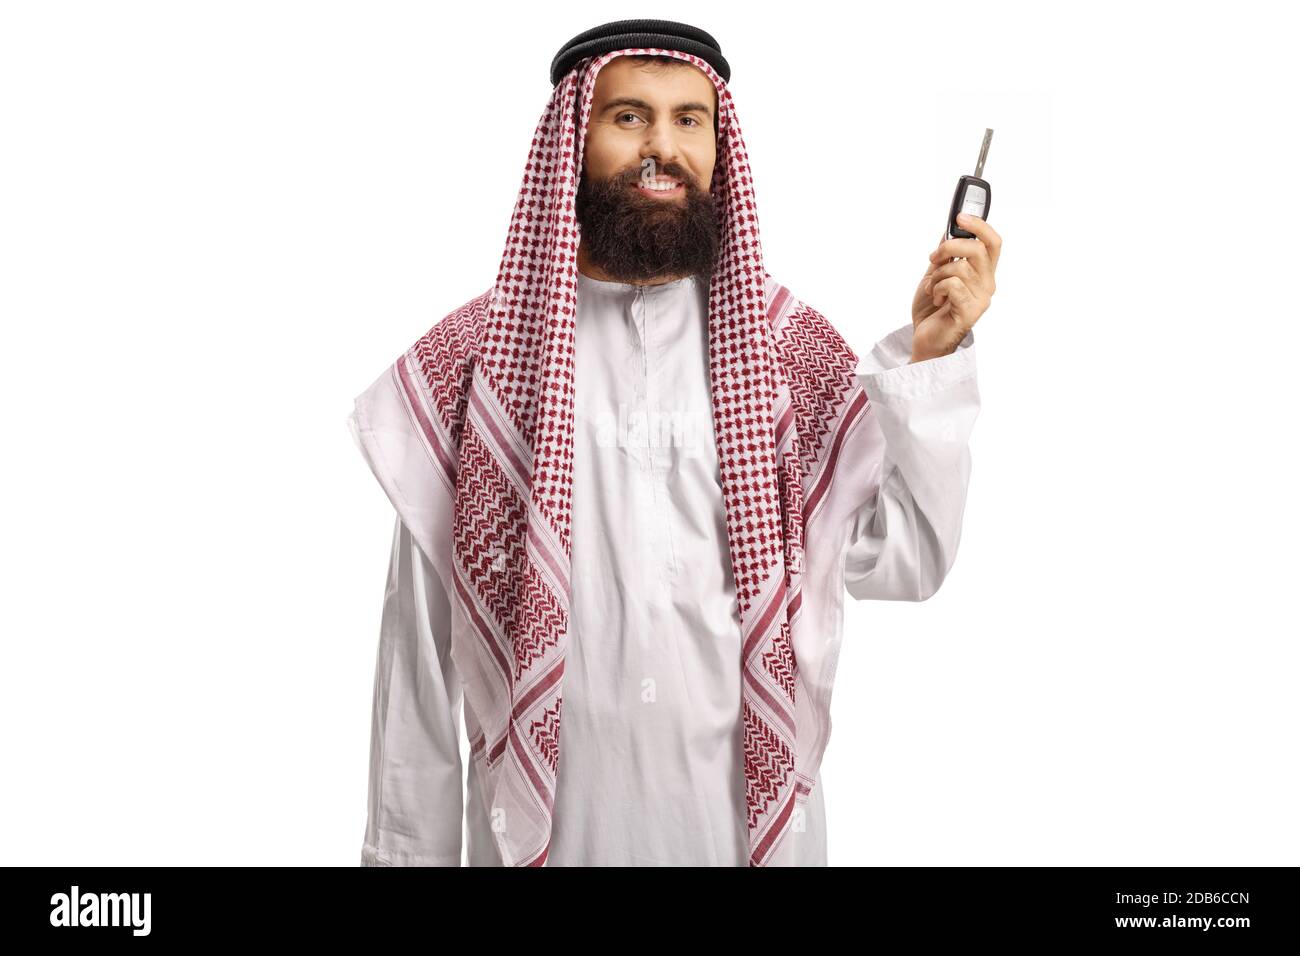 Saudi arab man holding car keys and smiling isolated on white background Stock Photo